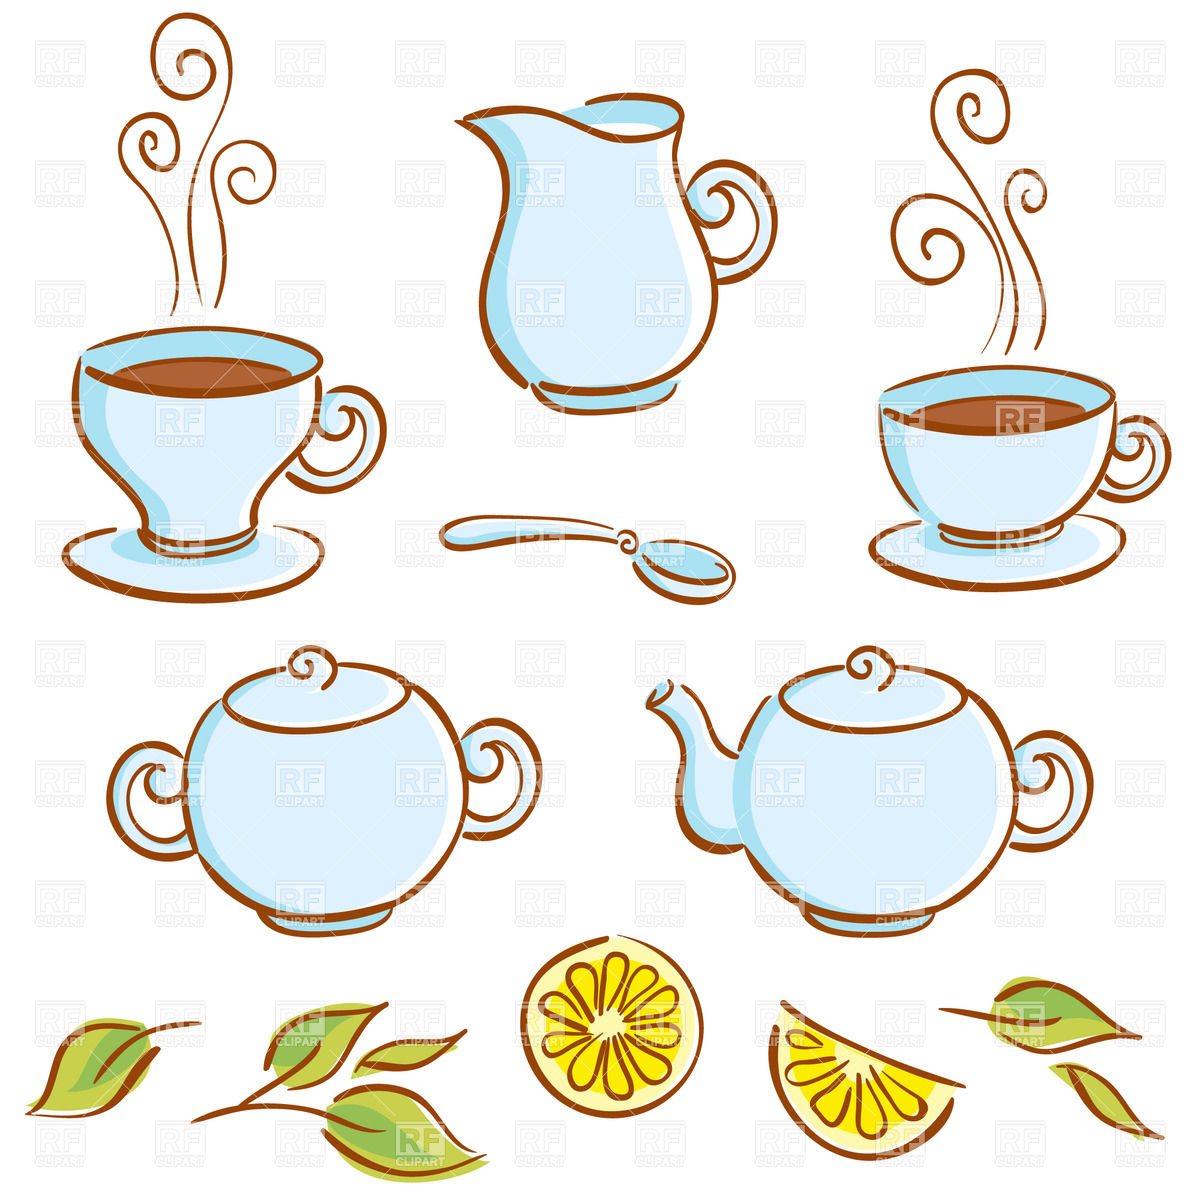 Tea Cup Clip Art, Tea Party B